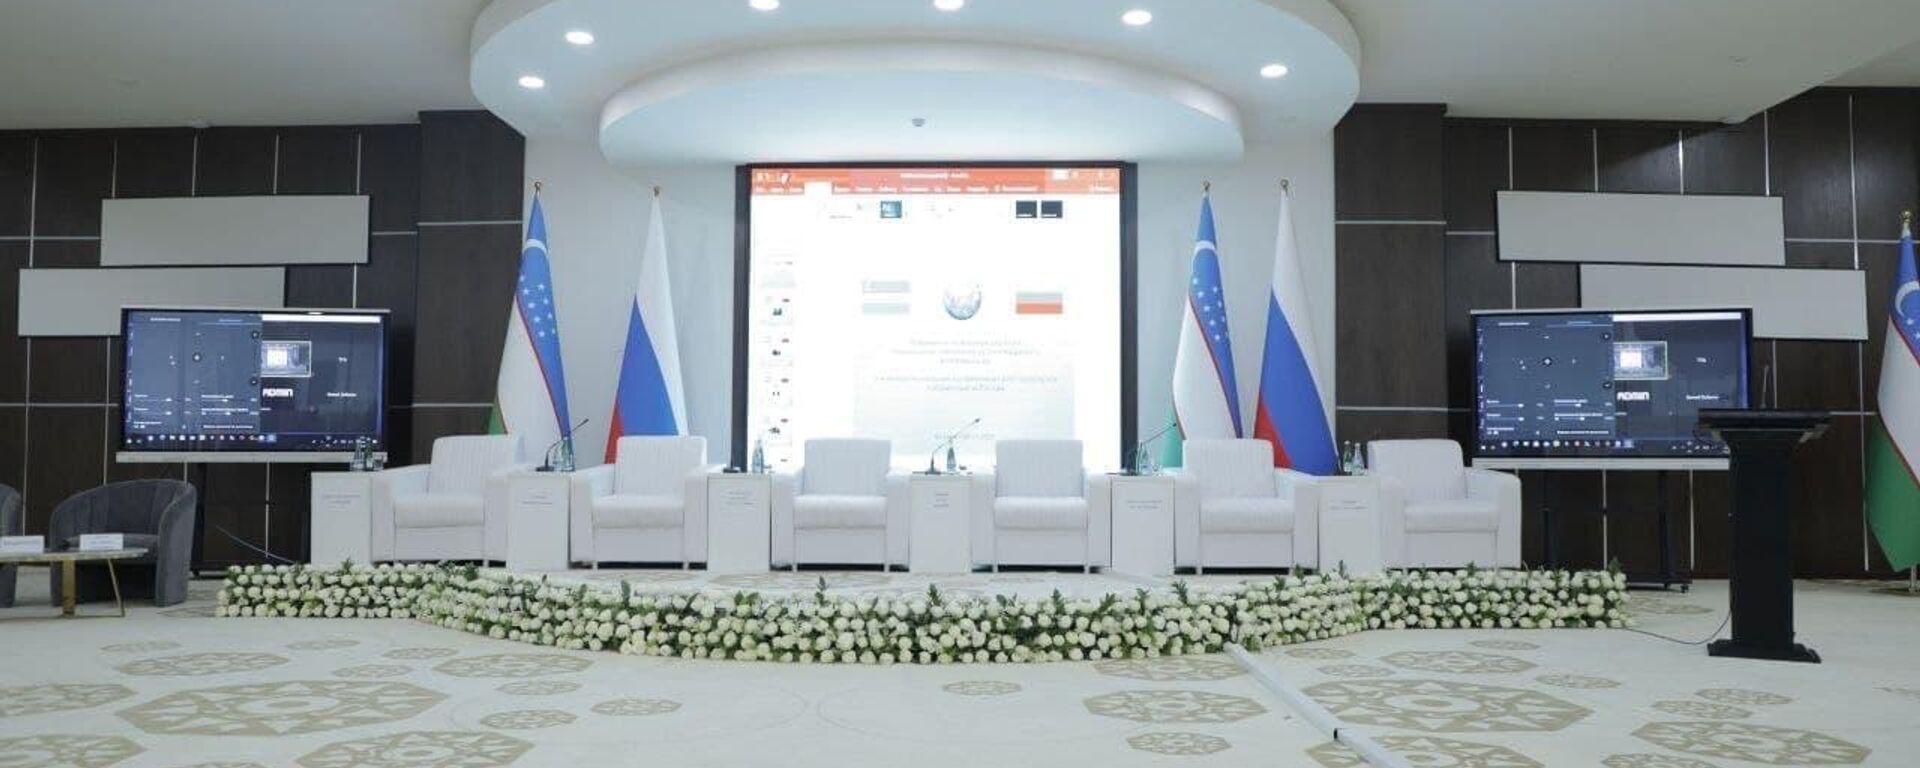 Третья межрегиональная конференция ректоров вузов Узбекистана и России в Бухаре - Sputnik Узбекистан, 1920, 26.05.2021